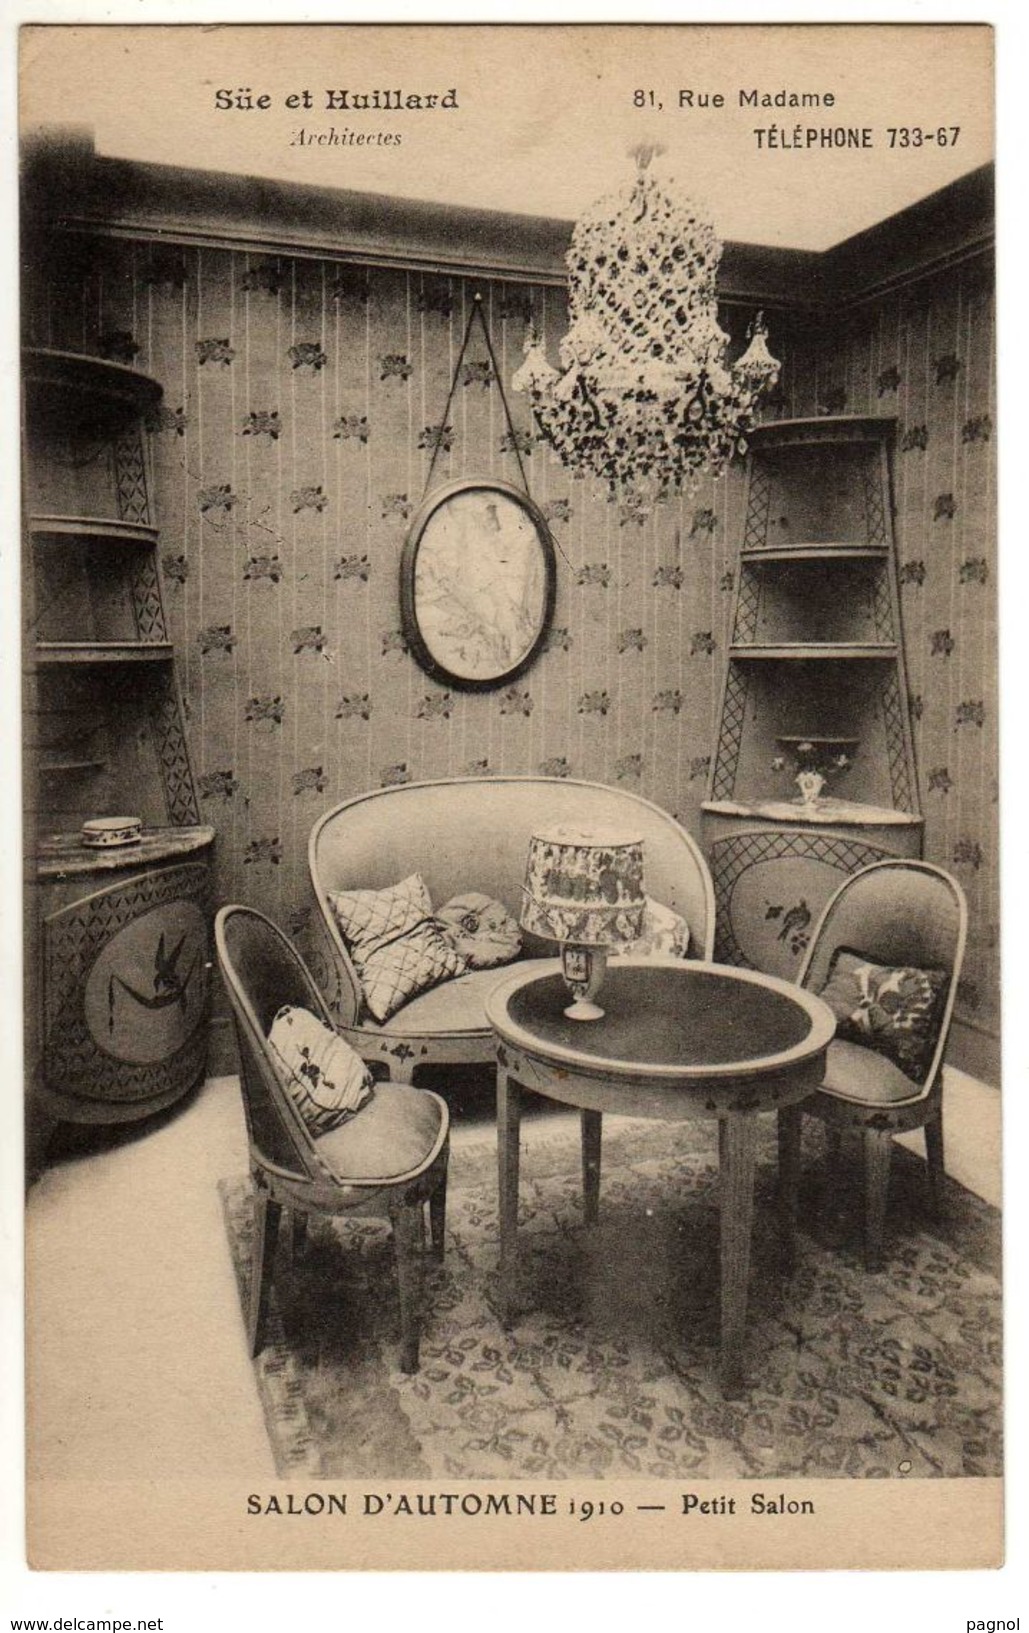 75 : Paris : Salon De Paris 1910 : Petit Salon : Architectes Süe Et Huillard - Ausstellungen